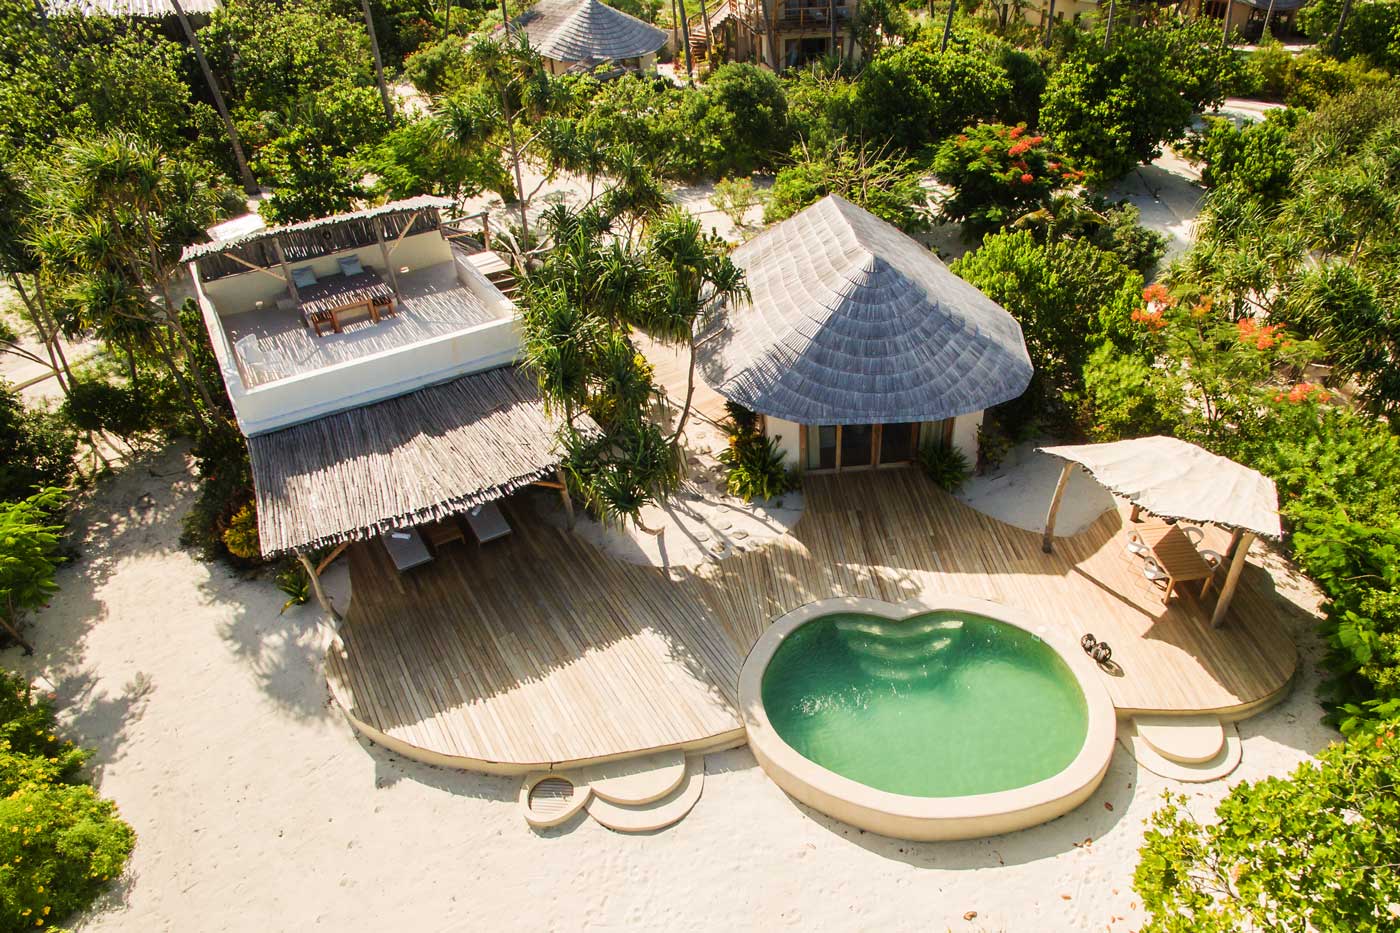 Tanzanie - Zanzibar - Hôtel White Sand Luxury Villas & Spa 5*